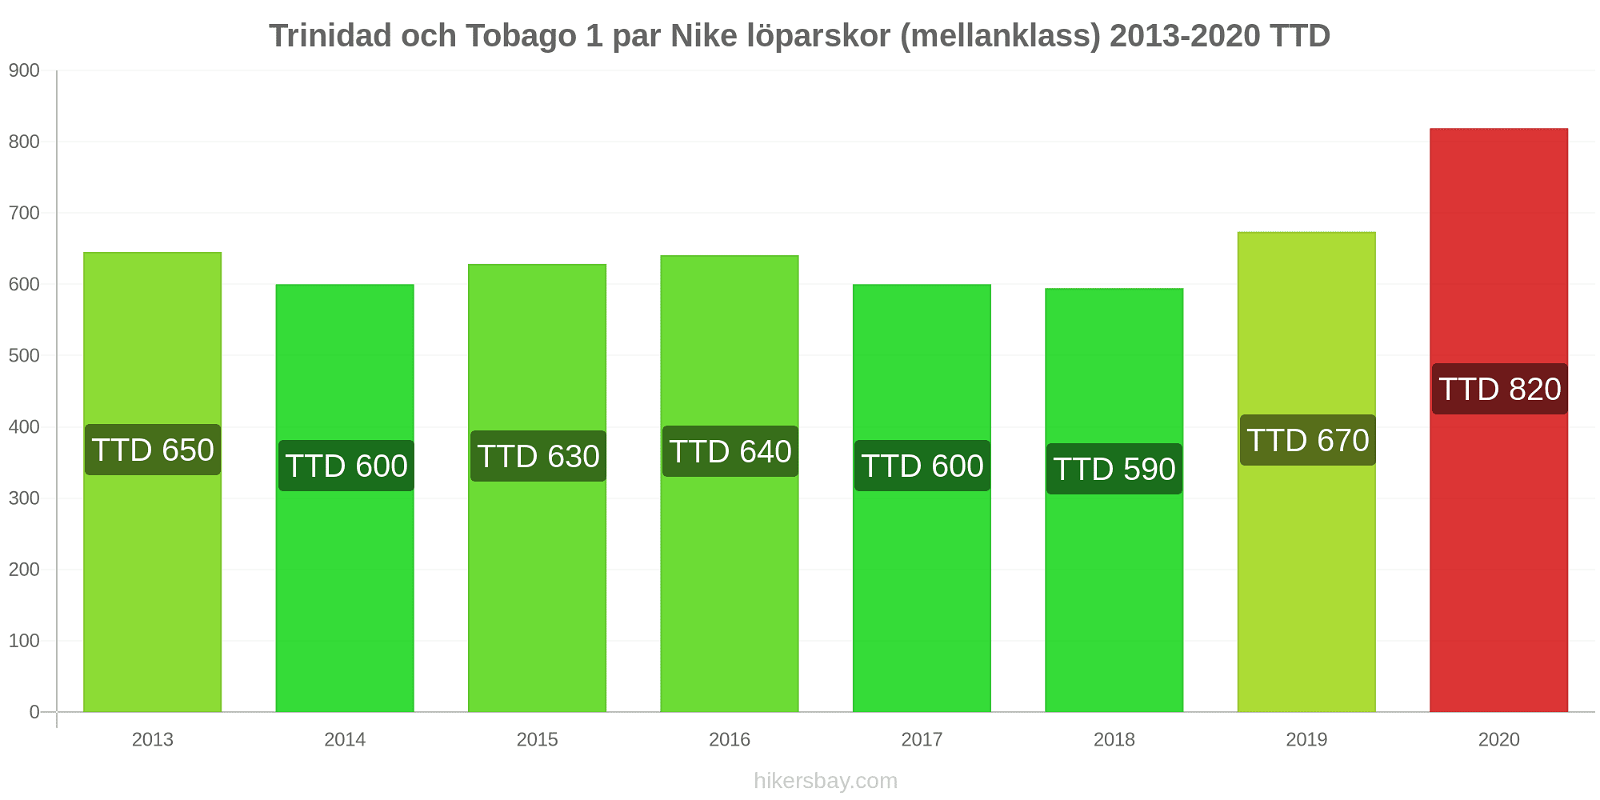 Trinidad och Tobago prisförändringar 1 par Nike löparskor (mellanklass) hikersbay.com